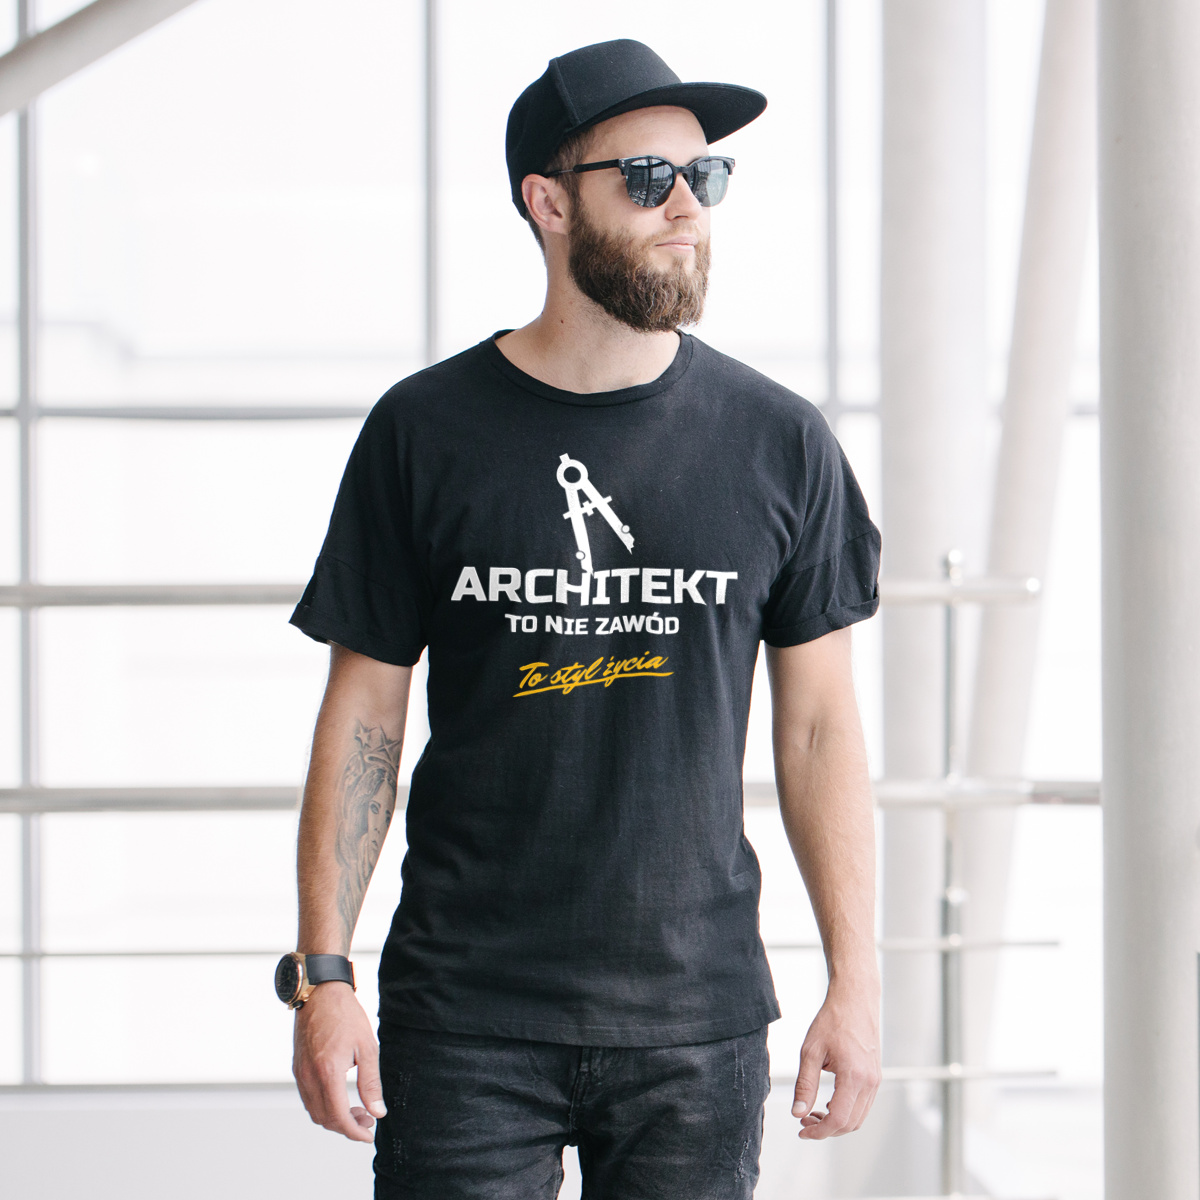 Architekt To Nie Zawód - To Styl Życia - Męska Koszulka Czarna